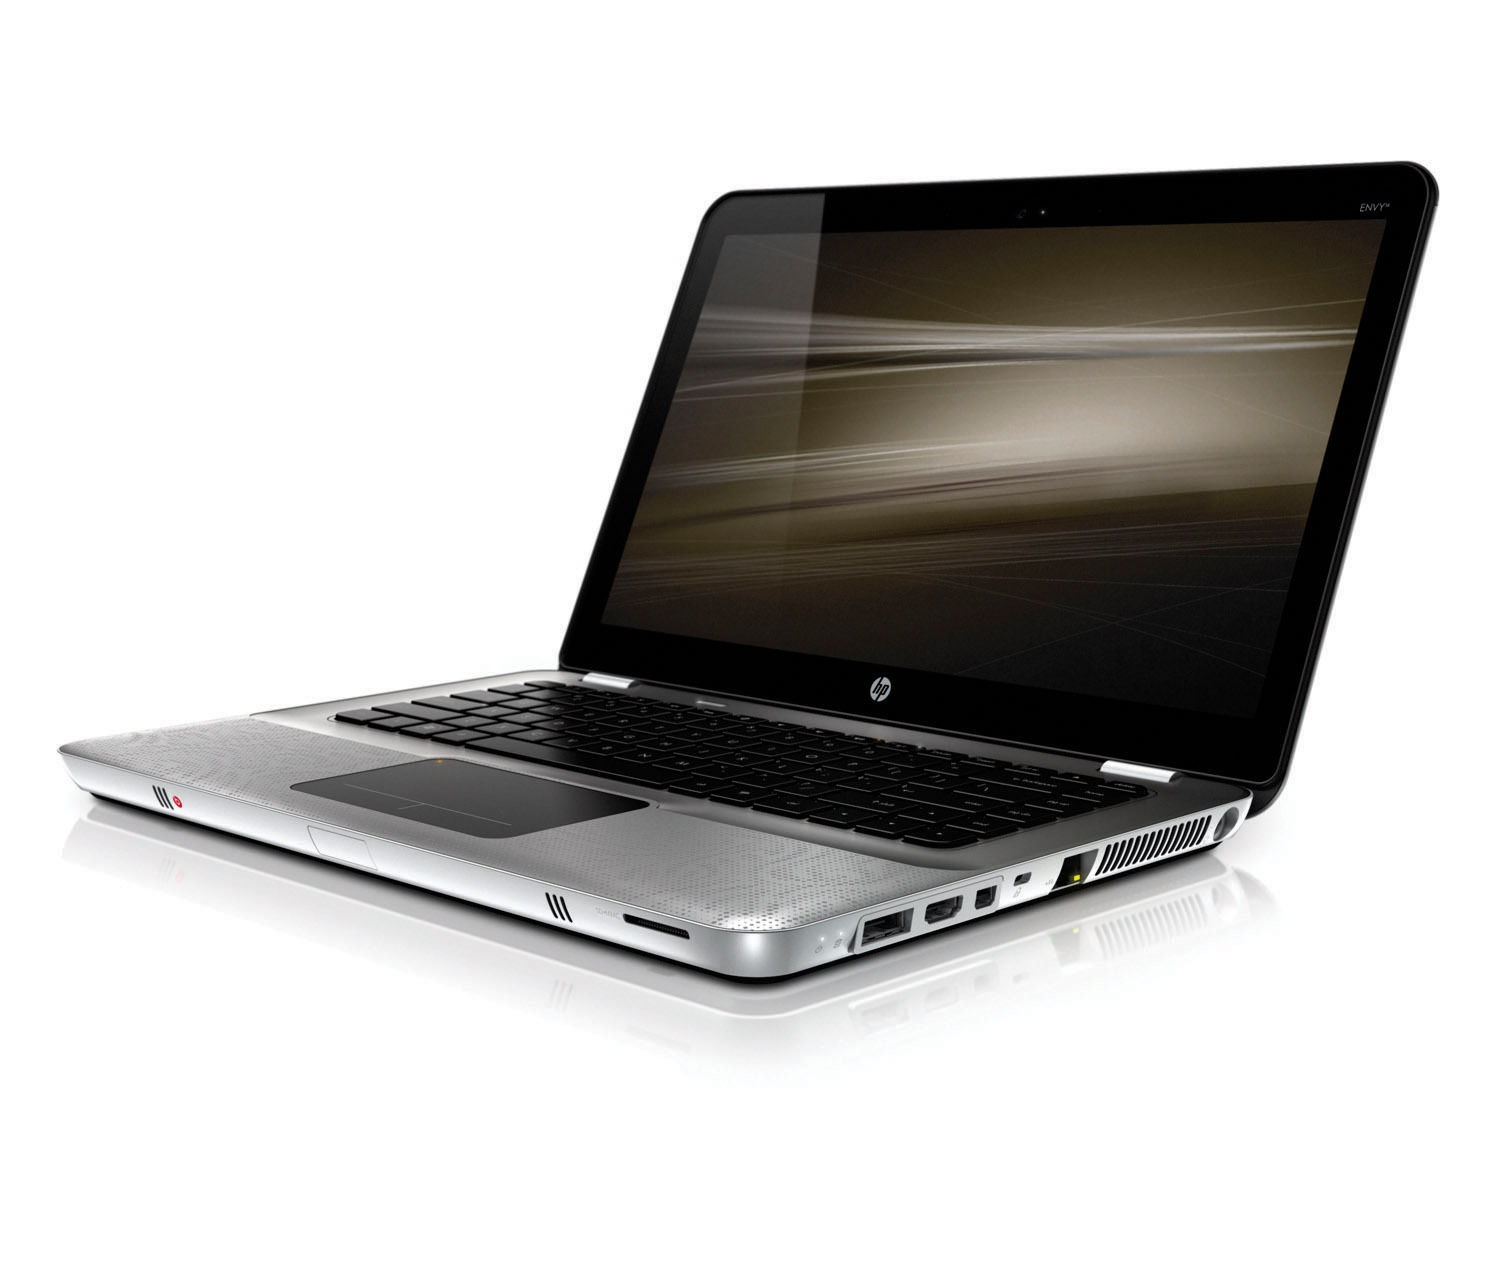 HP Notebook: az iway.hu áruházban ilyet is vásárolhat